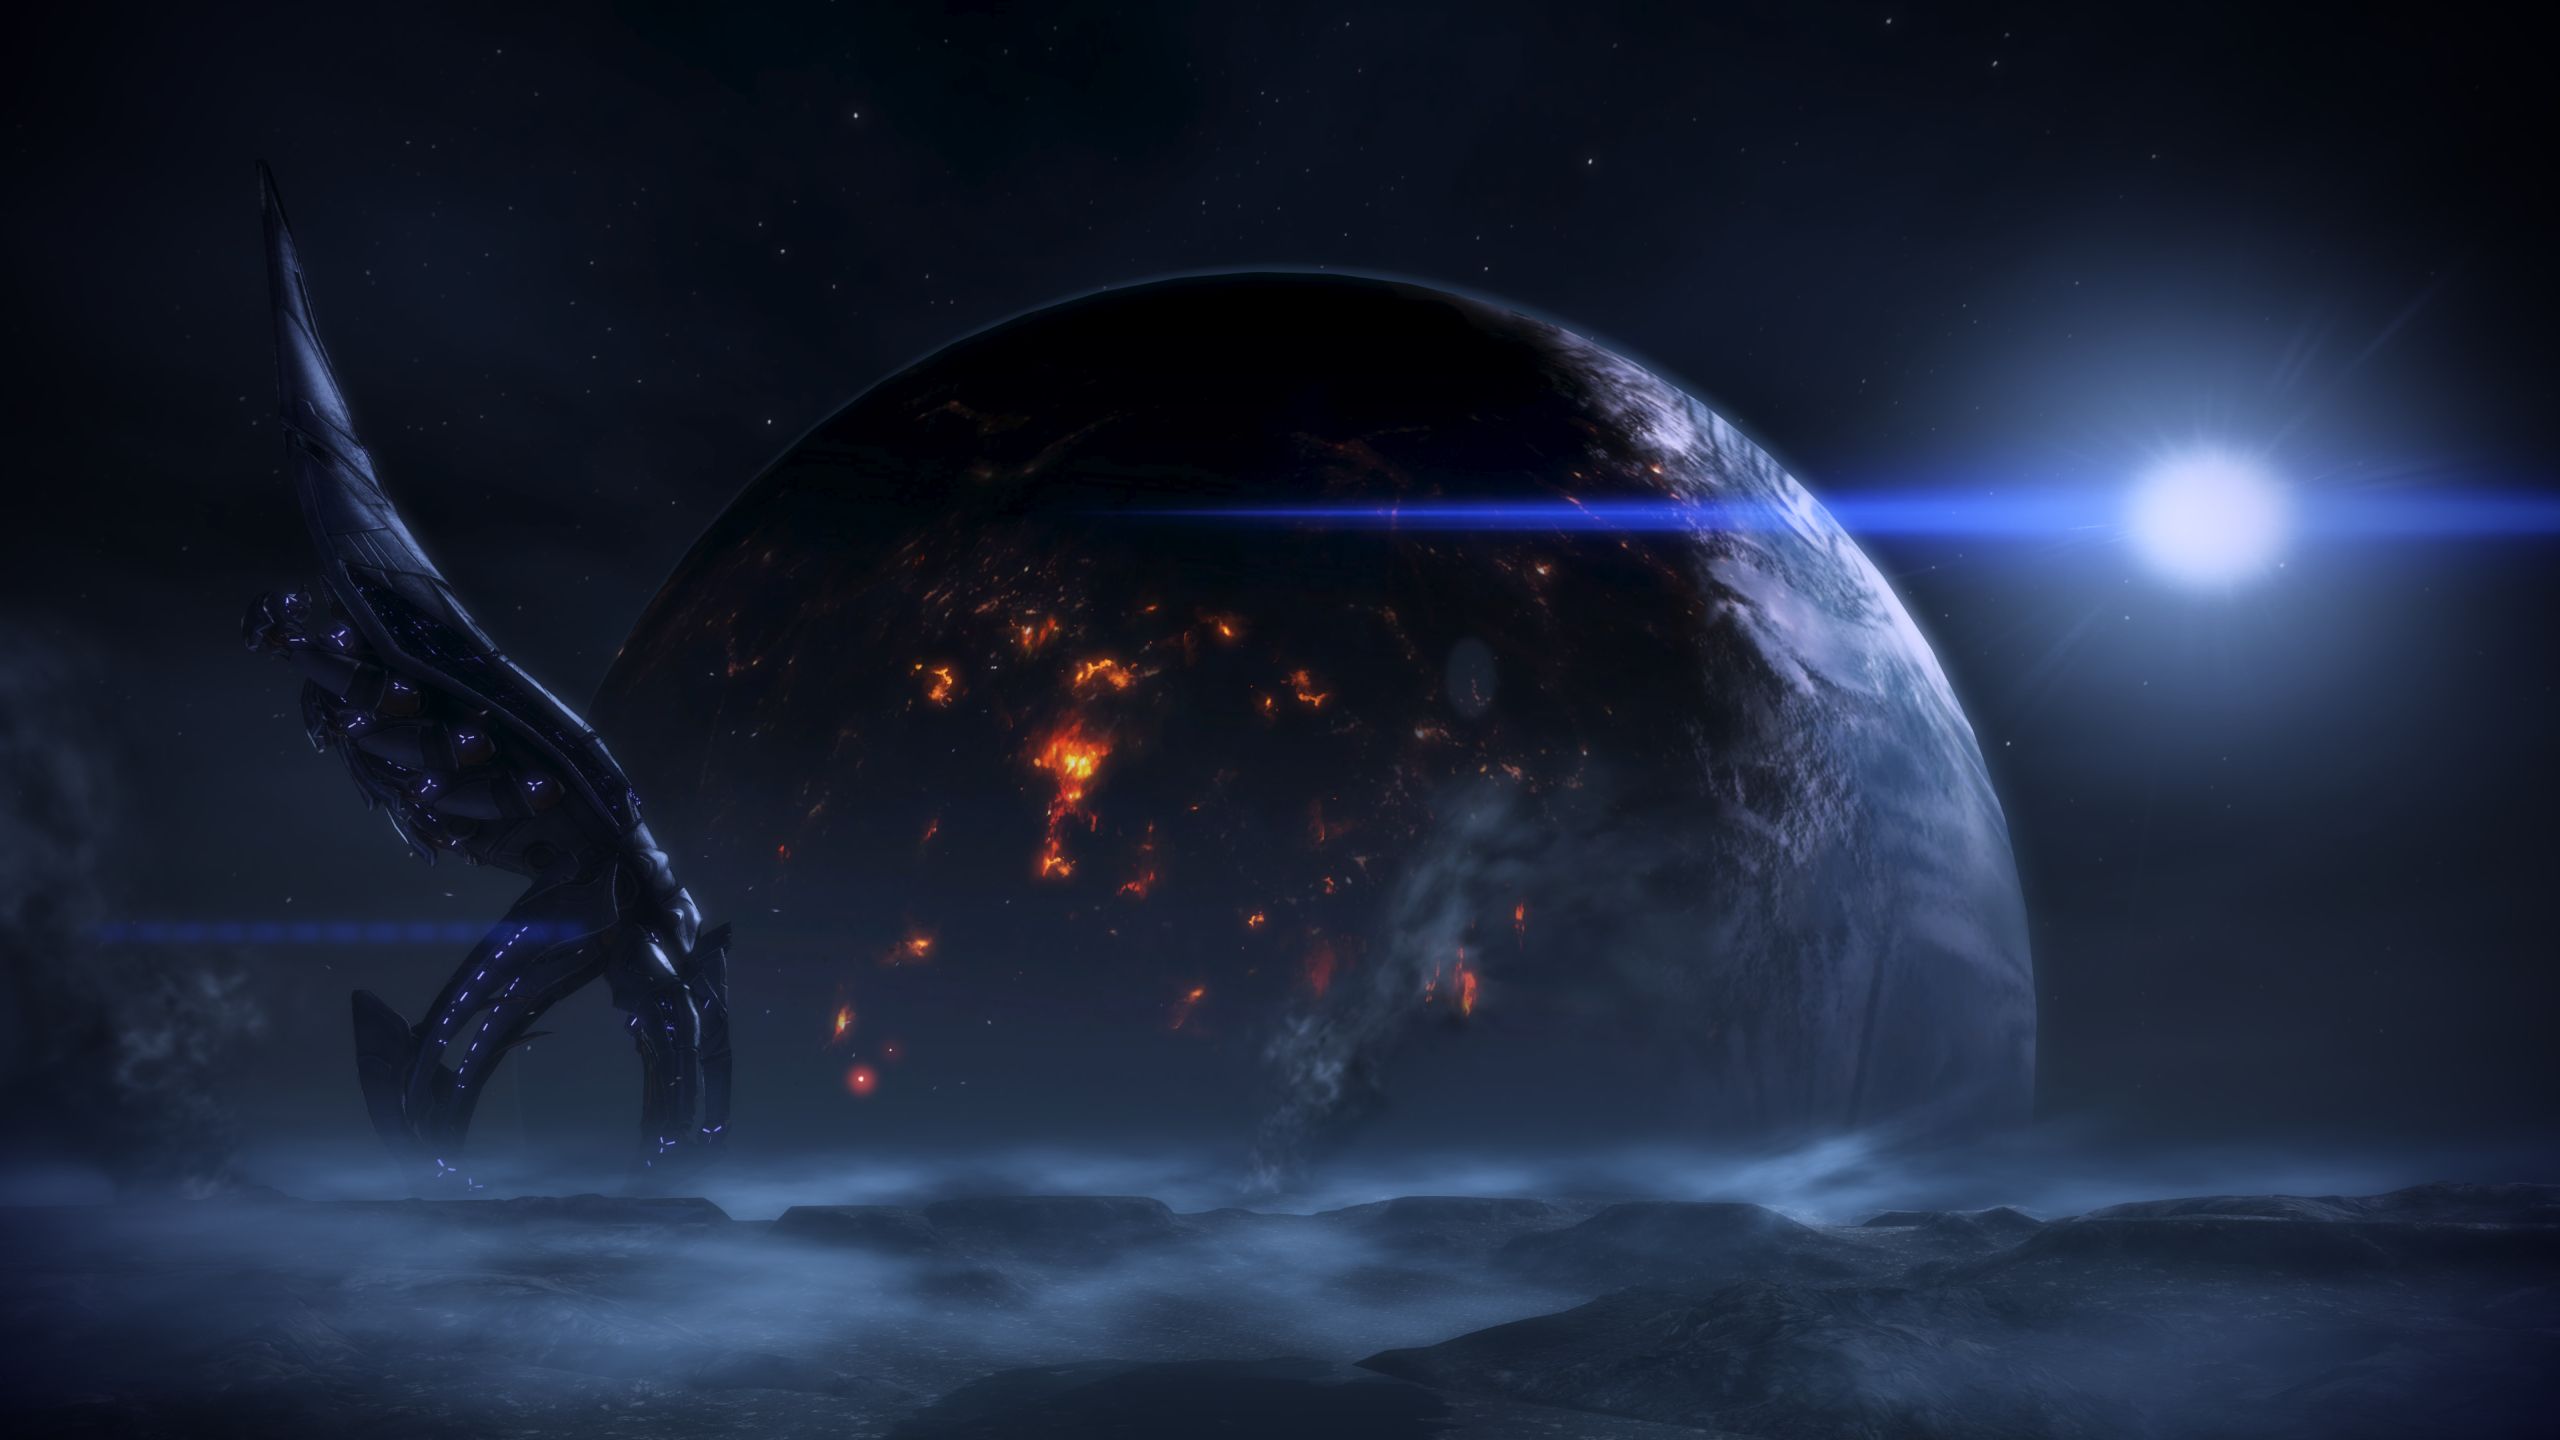 Mass Effect 3 Computer Wallpapers, Desktop Backgrounds | 2560x1440 ...